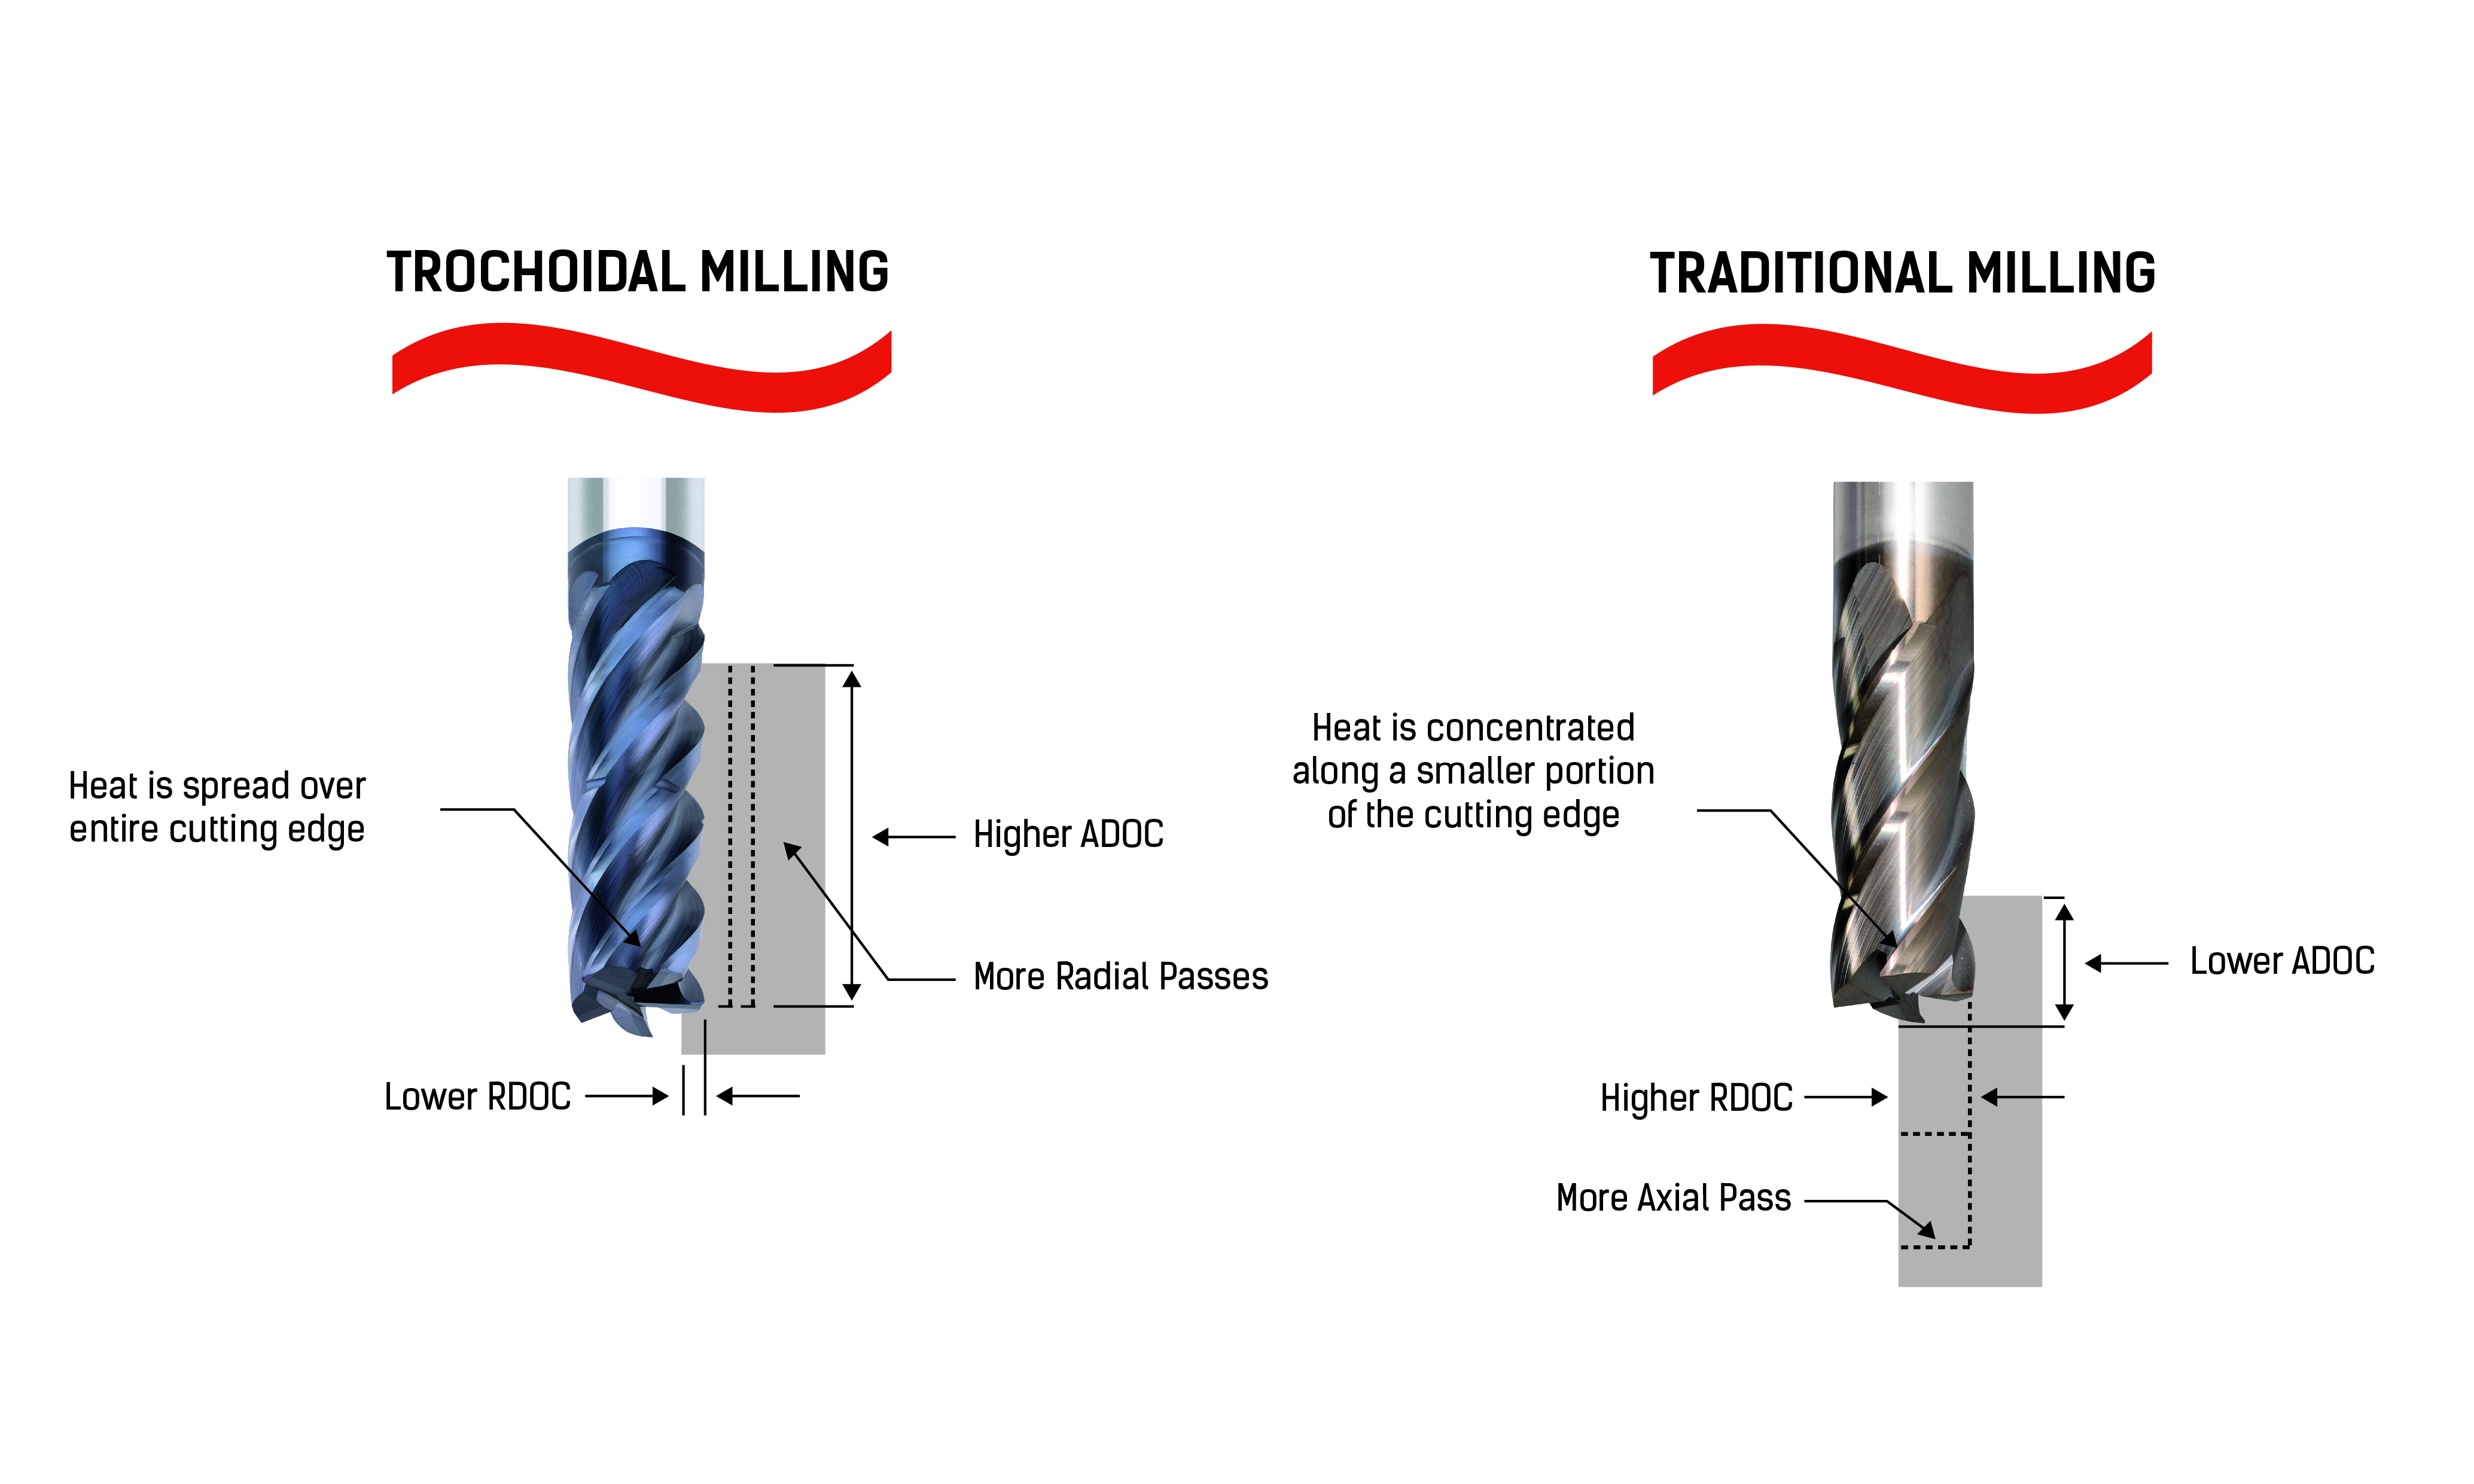 Trochoidal milling